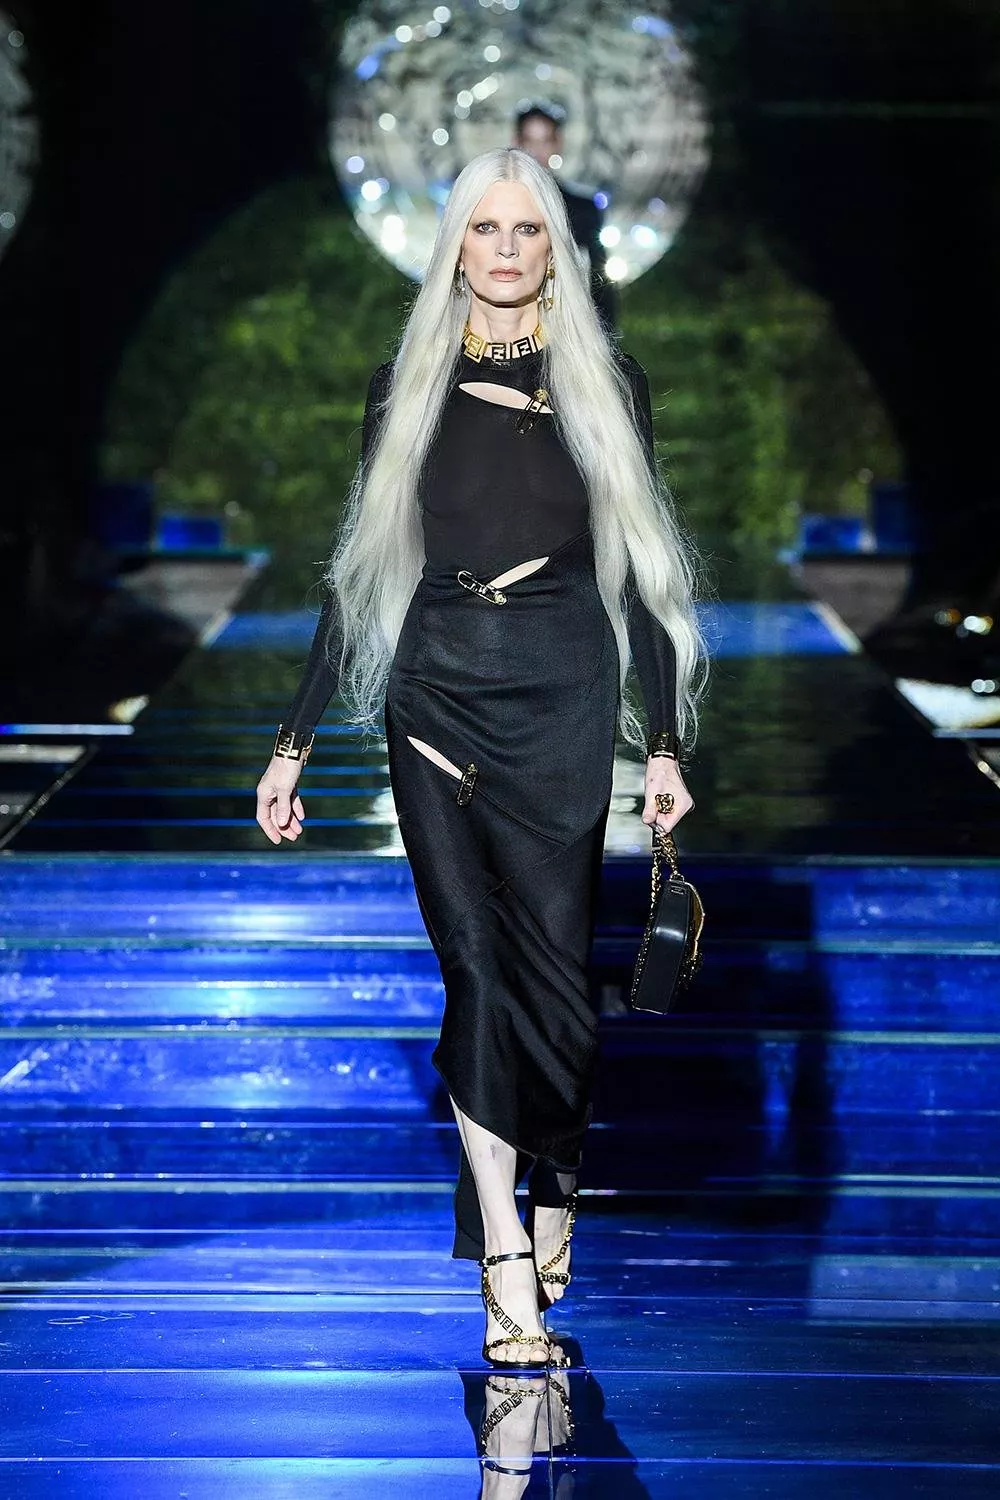 تعاون Fendi x Versace في أسبوع الموضة في ميلانو... لحظة تاريخيّة في عالم الموضة